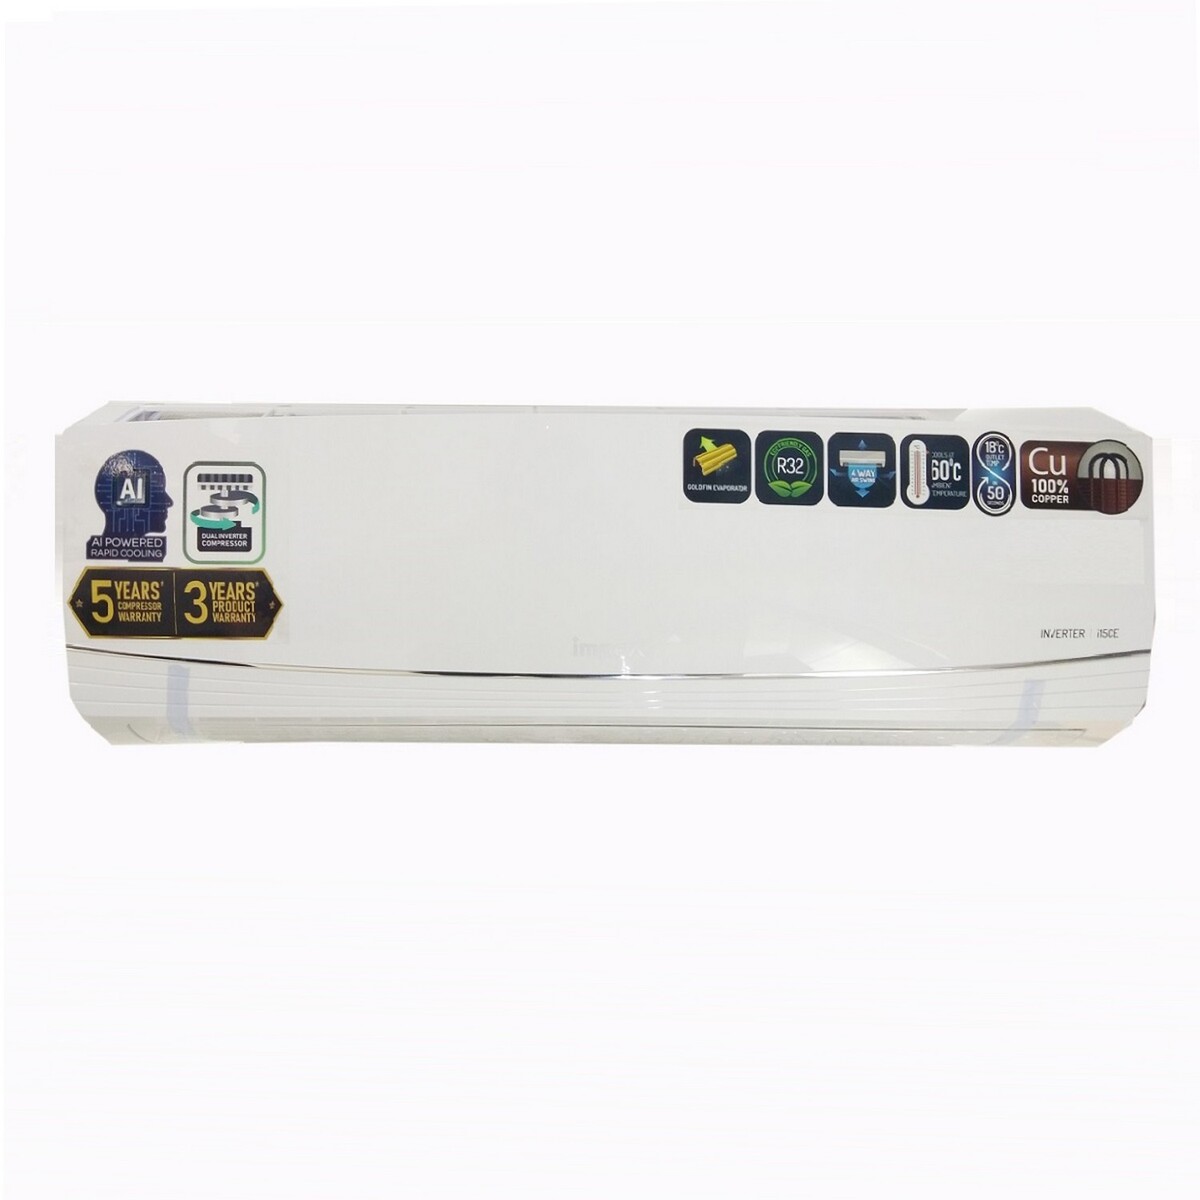 Impex Inverter Air Conditioner i10 CE 1Ton 3*